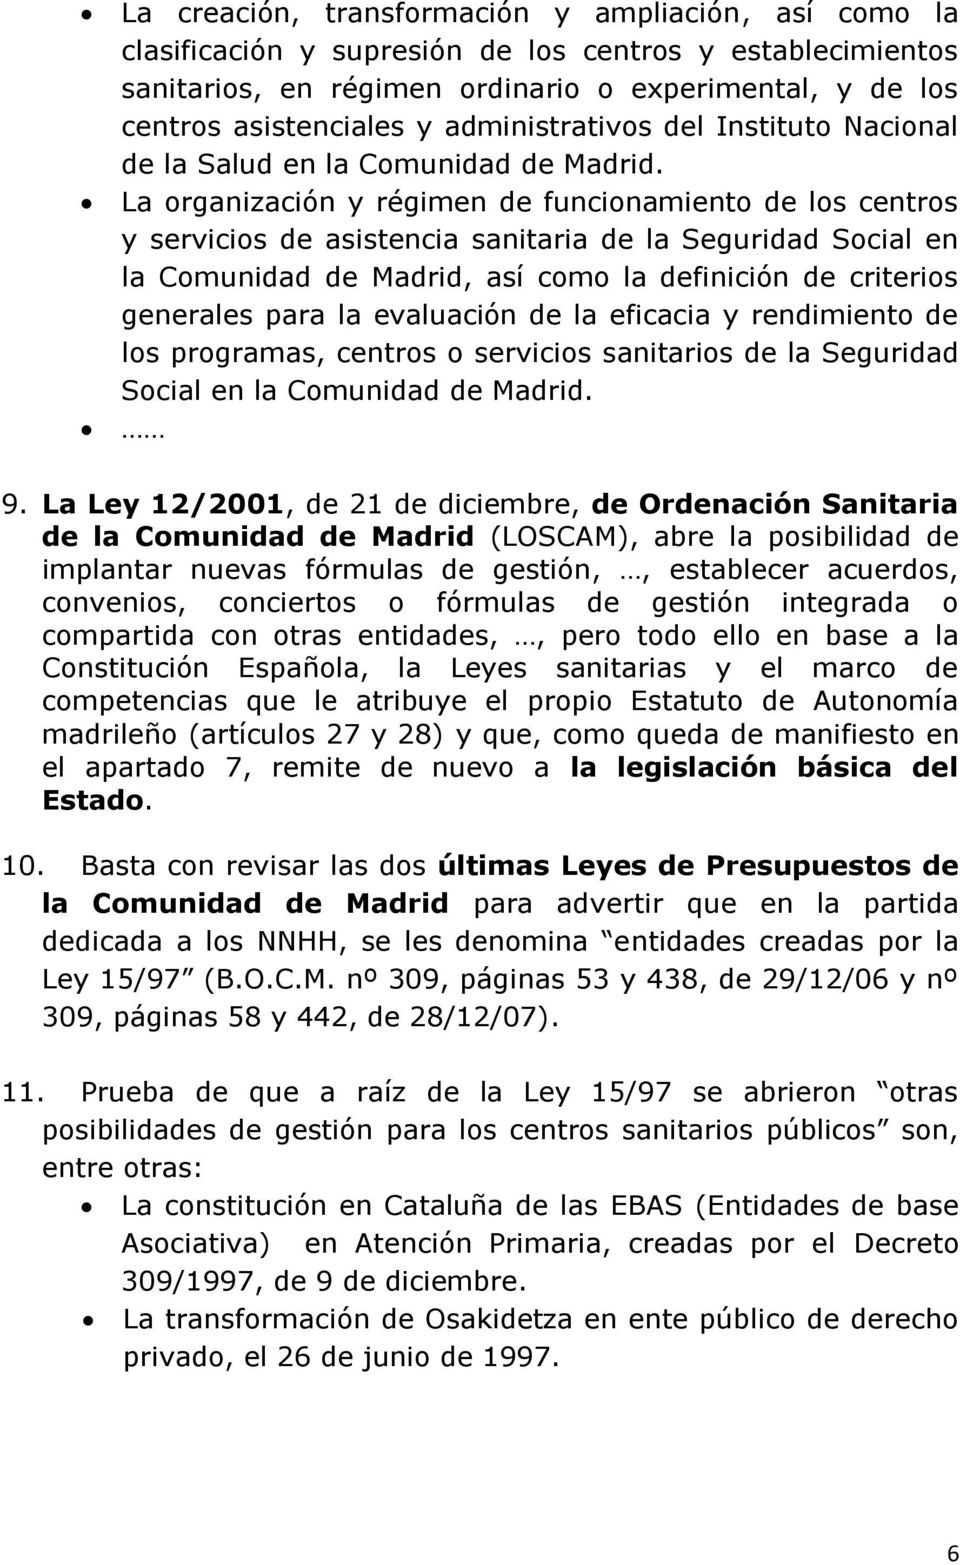 La organización y régimen de funcionamiento de los centros y servicios de asistencia sanitaria de la Seguridad Social en la Comunidad de Madrid, así como la definición de criterios generales para la